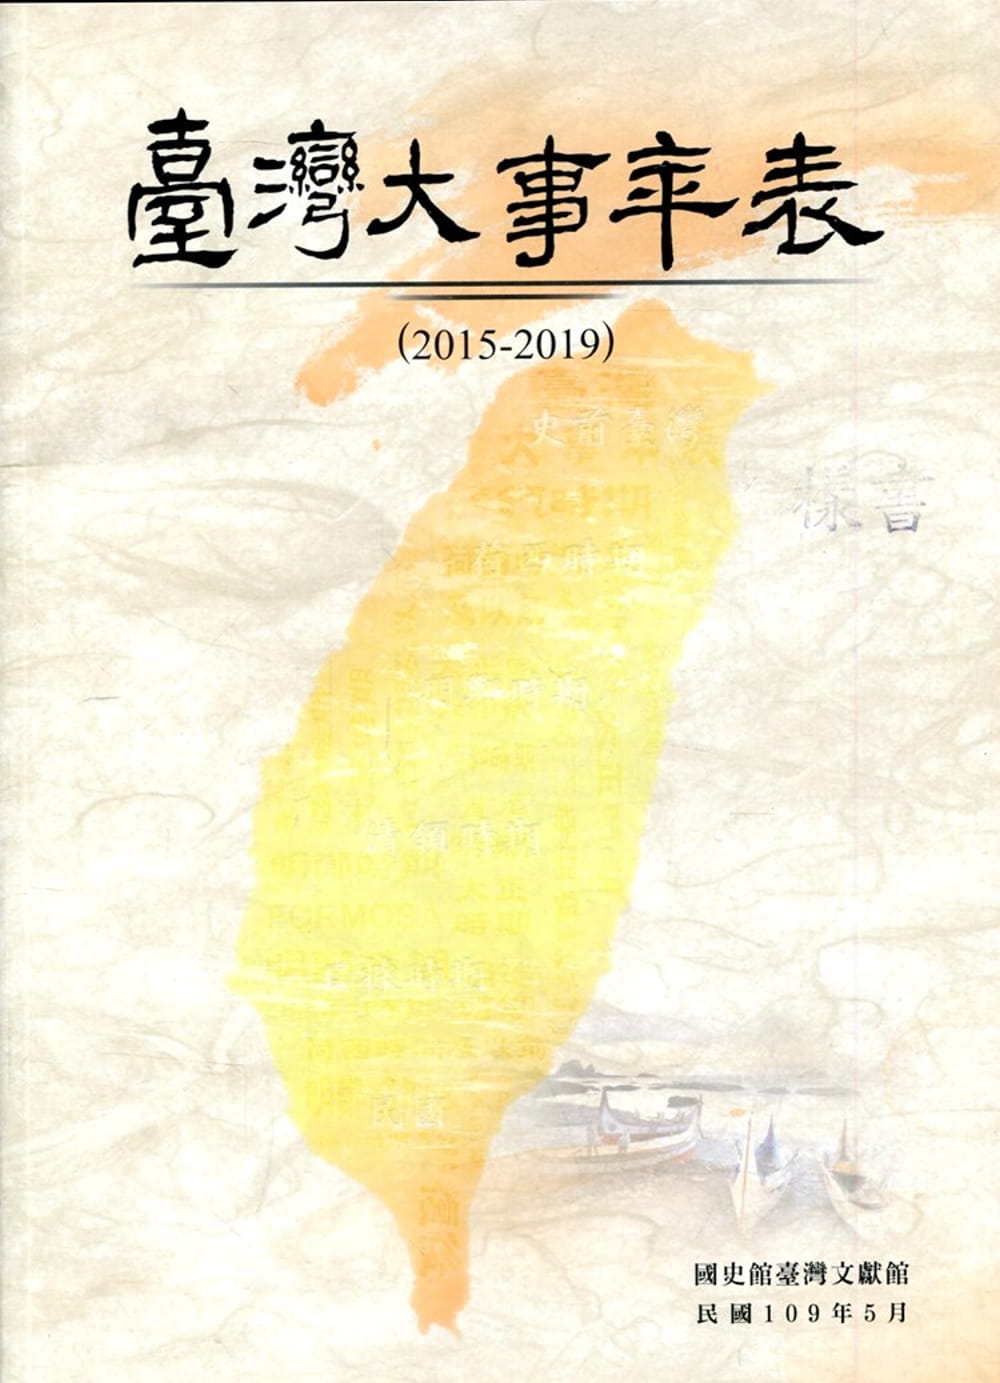 臺灣大事年表(2015-2019)